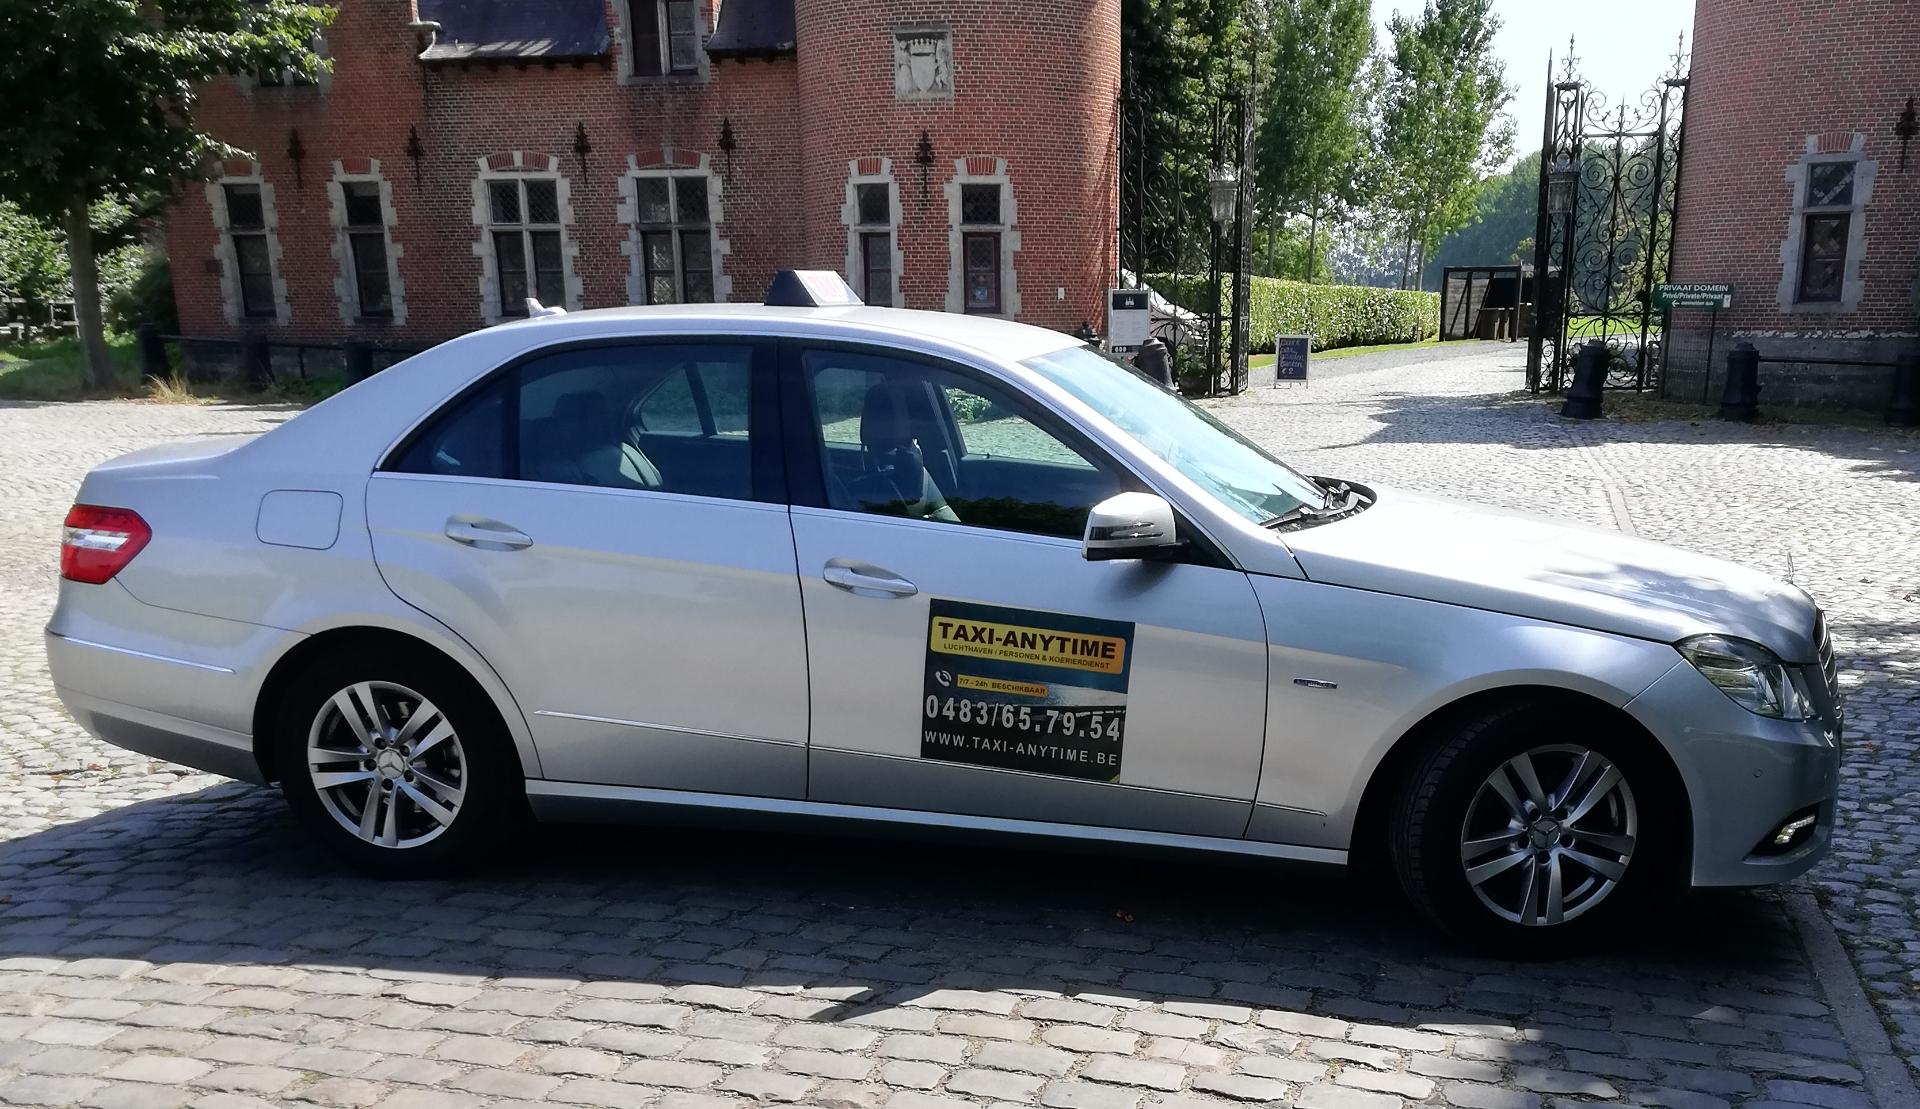 taxibedrijven Destelbergen Taxi Anytime